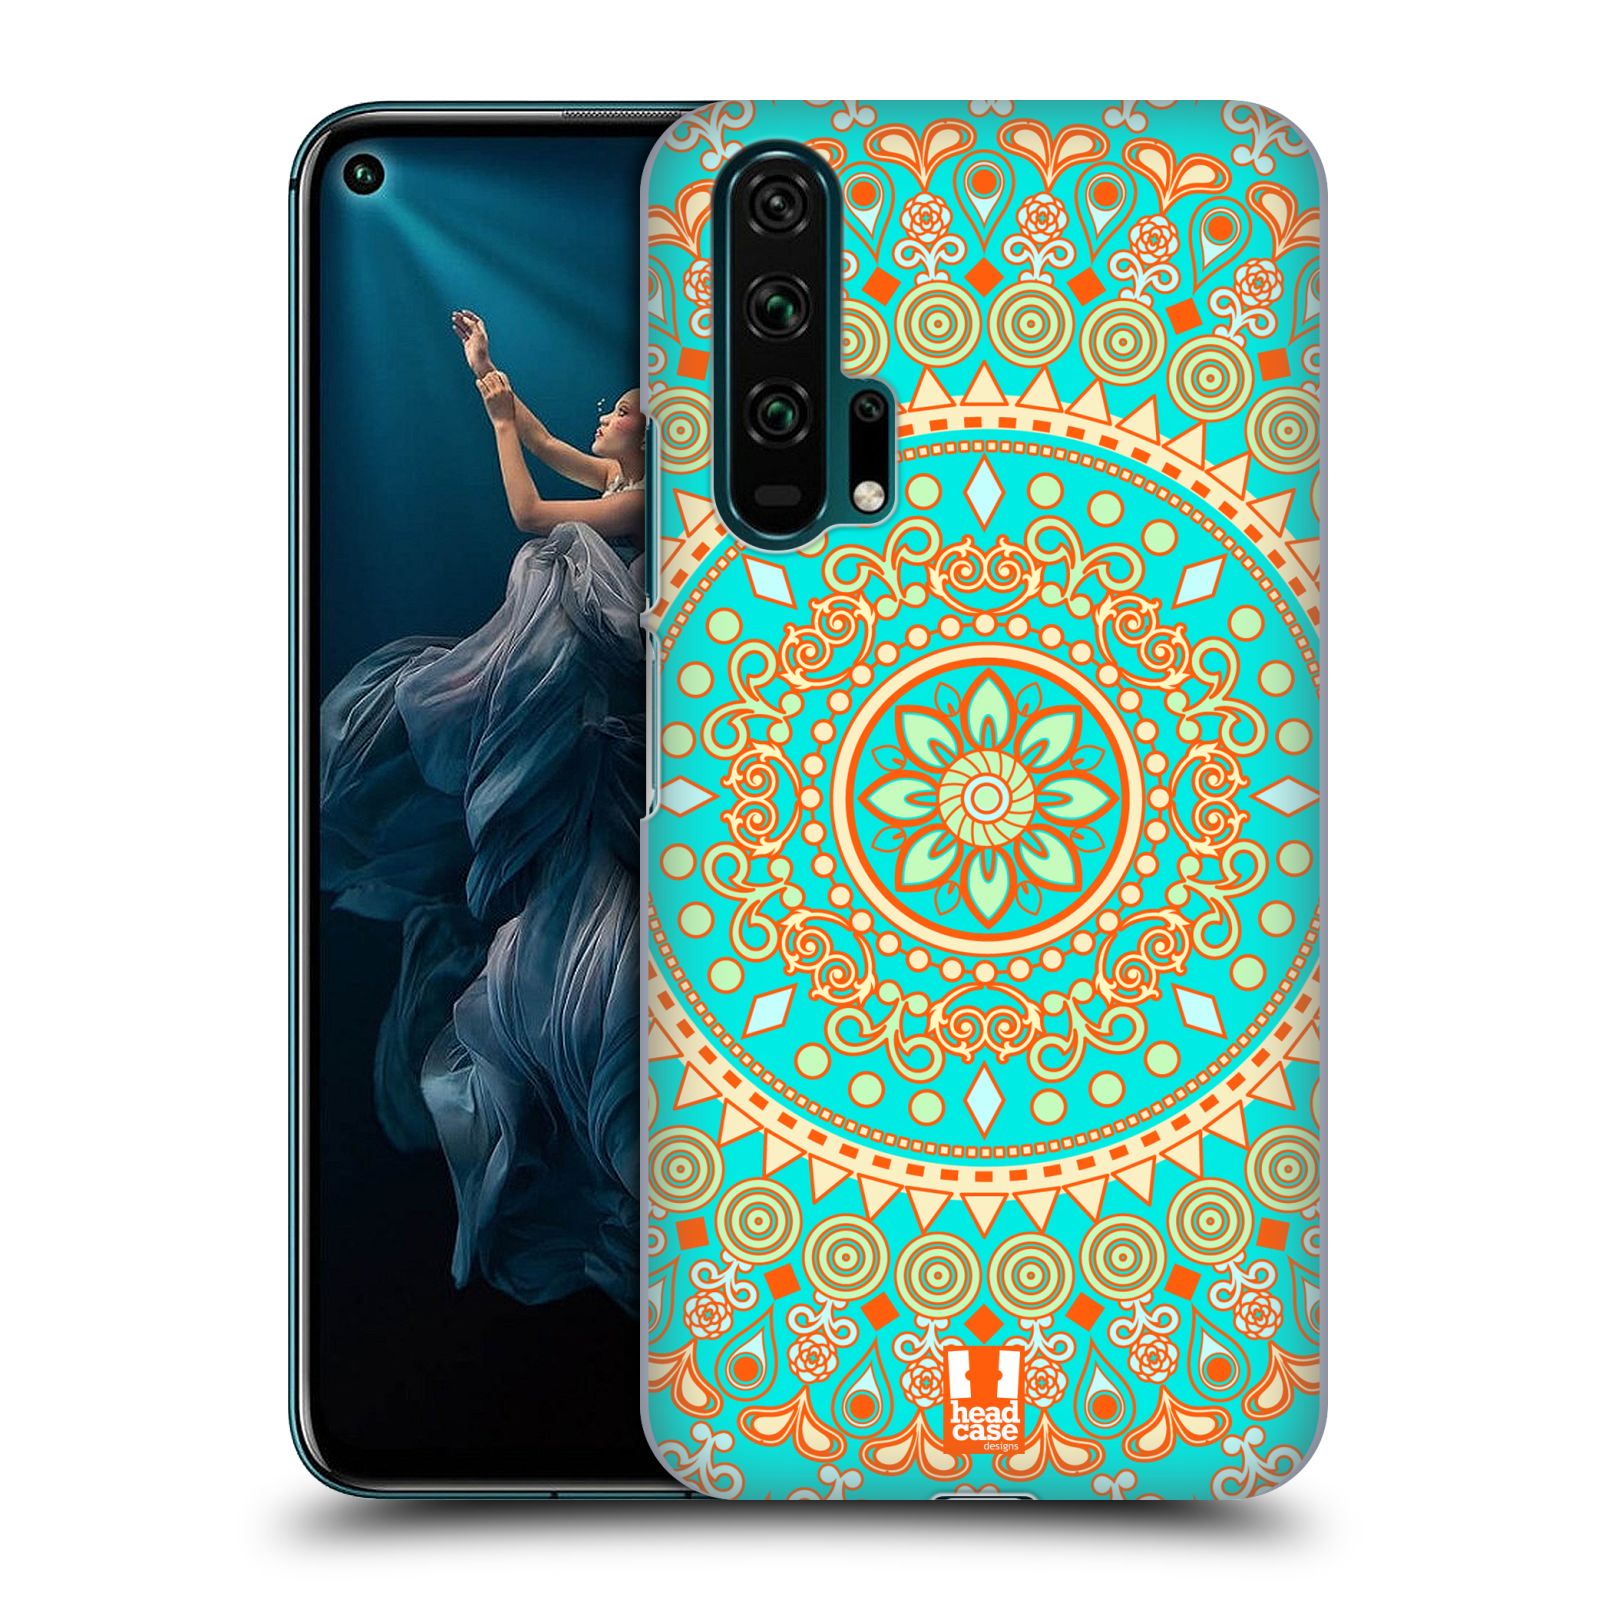 Pouzdro na mobil Honor 20 PRO - HEAD CASE - vzor Indie Mandala slunce barevný motiv TYRKYSOVÁ, ZELENÁ